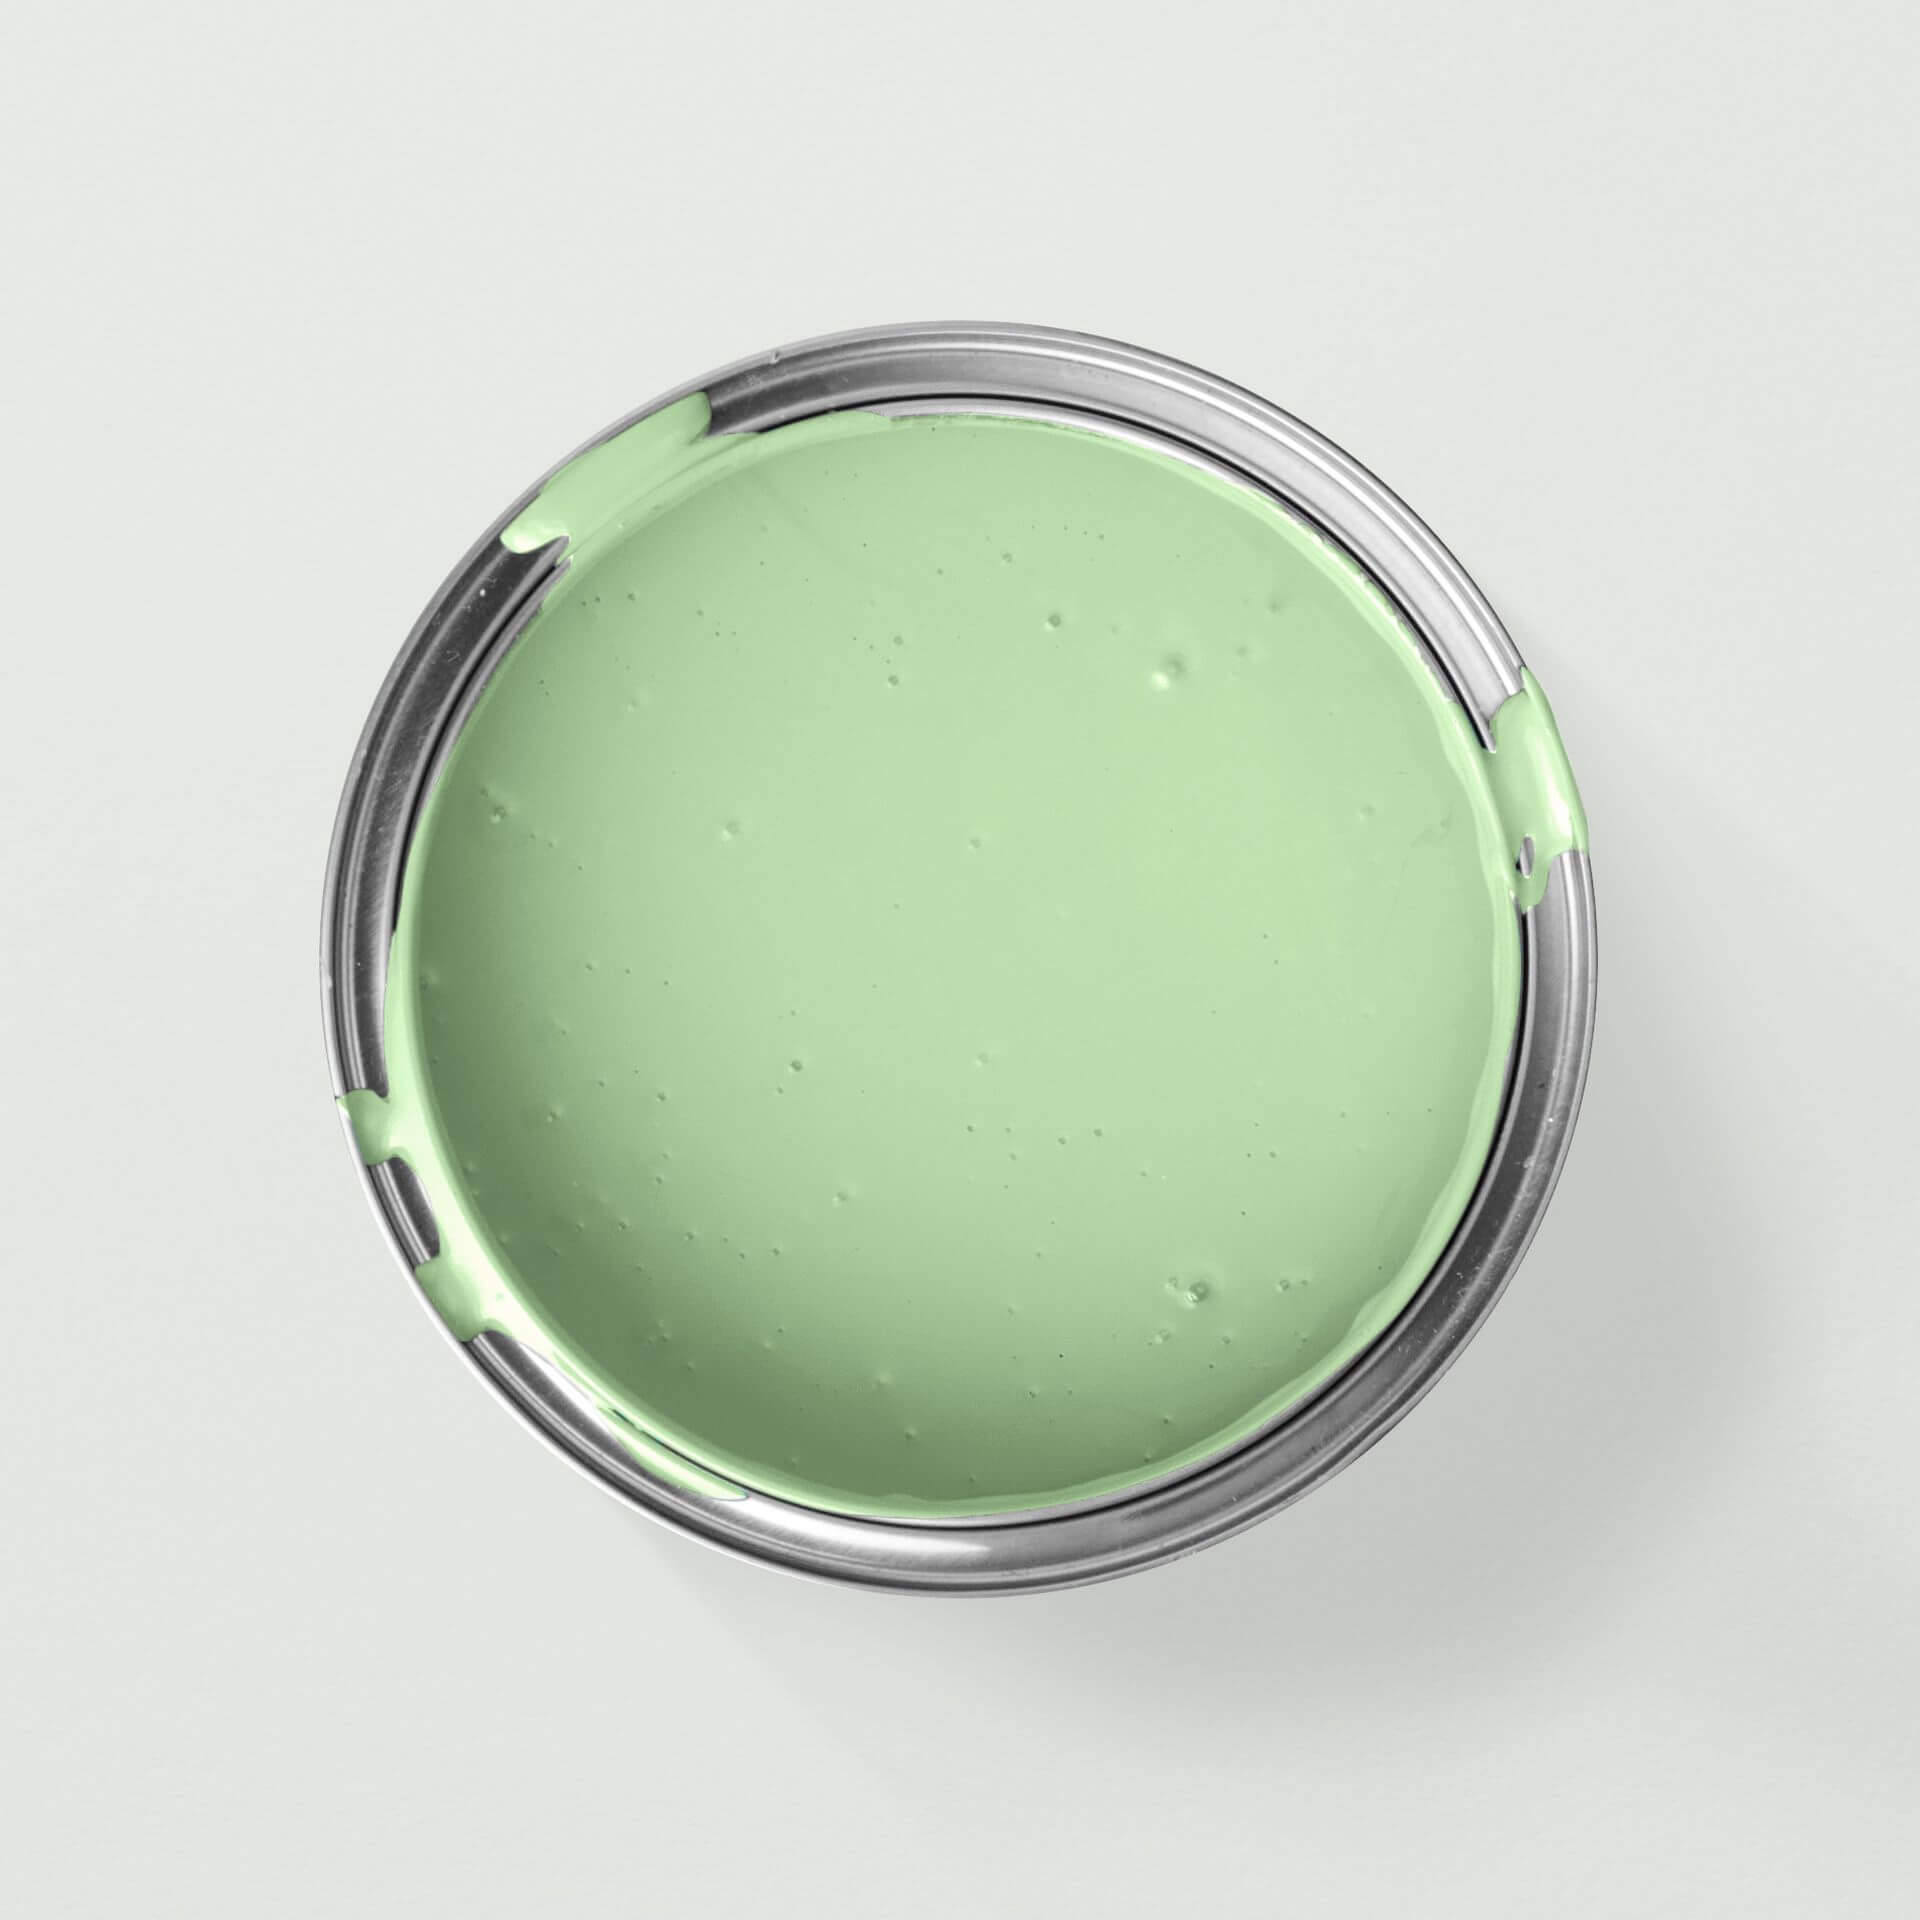 MissPompadour Grün mit Limette - Die Nützliche 2.5L